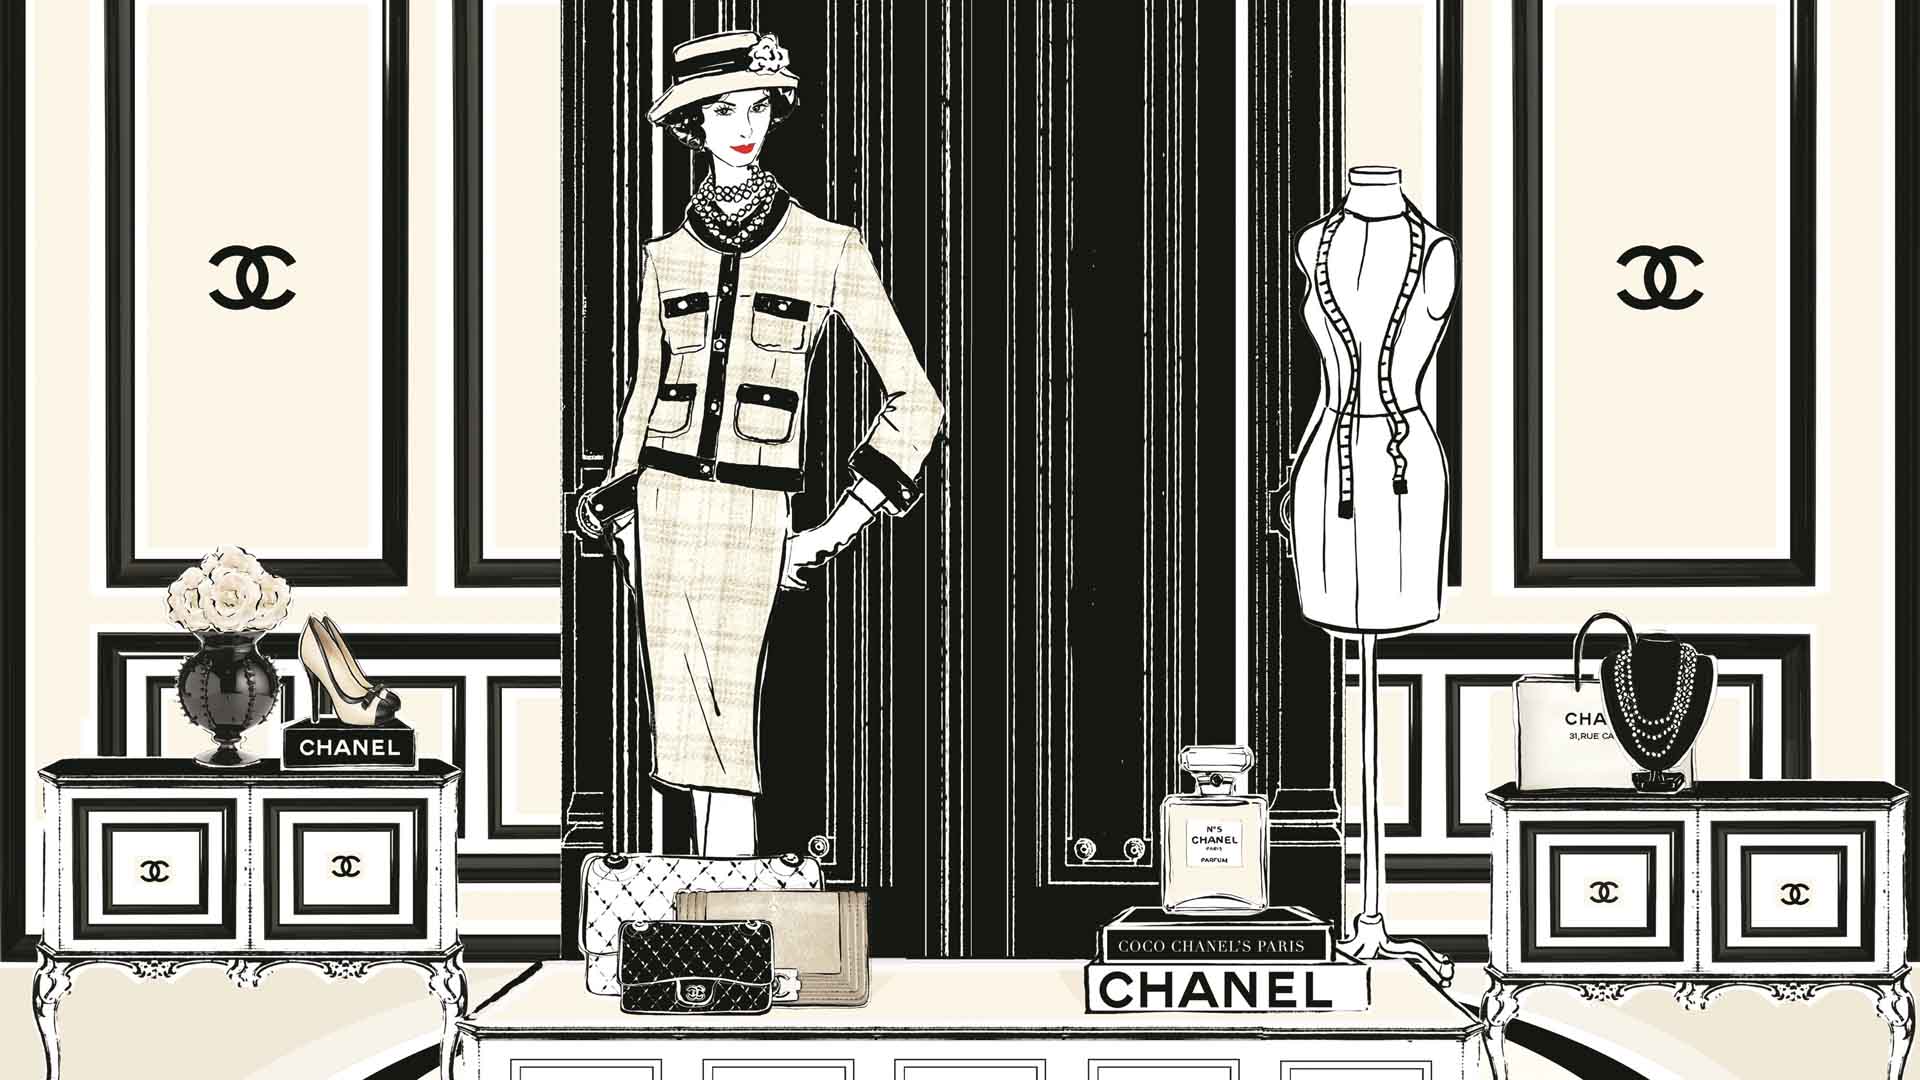 Las frases más interesantes de Coco Chanel